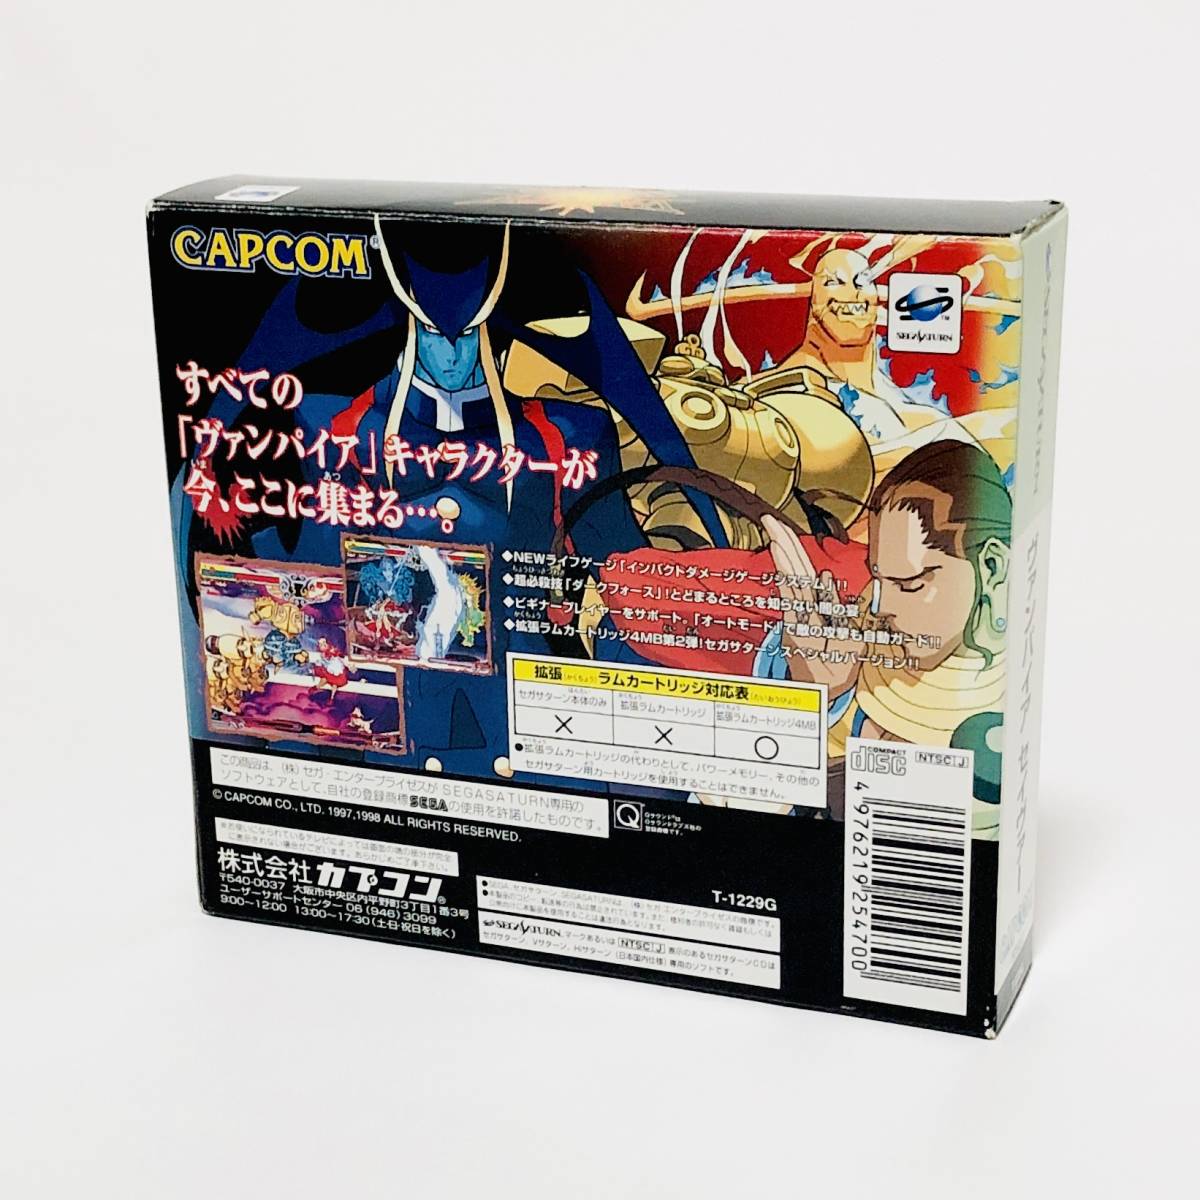 セガサターン ヴァンパイア セイヴァー 4MB 拡張ラムカートリッジ 同梱版 カプコン セガ Sega Saturn Vampire Savior CIB Capcom_画像2